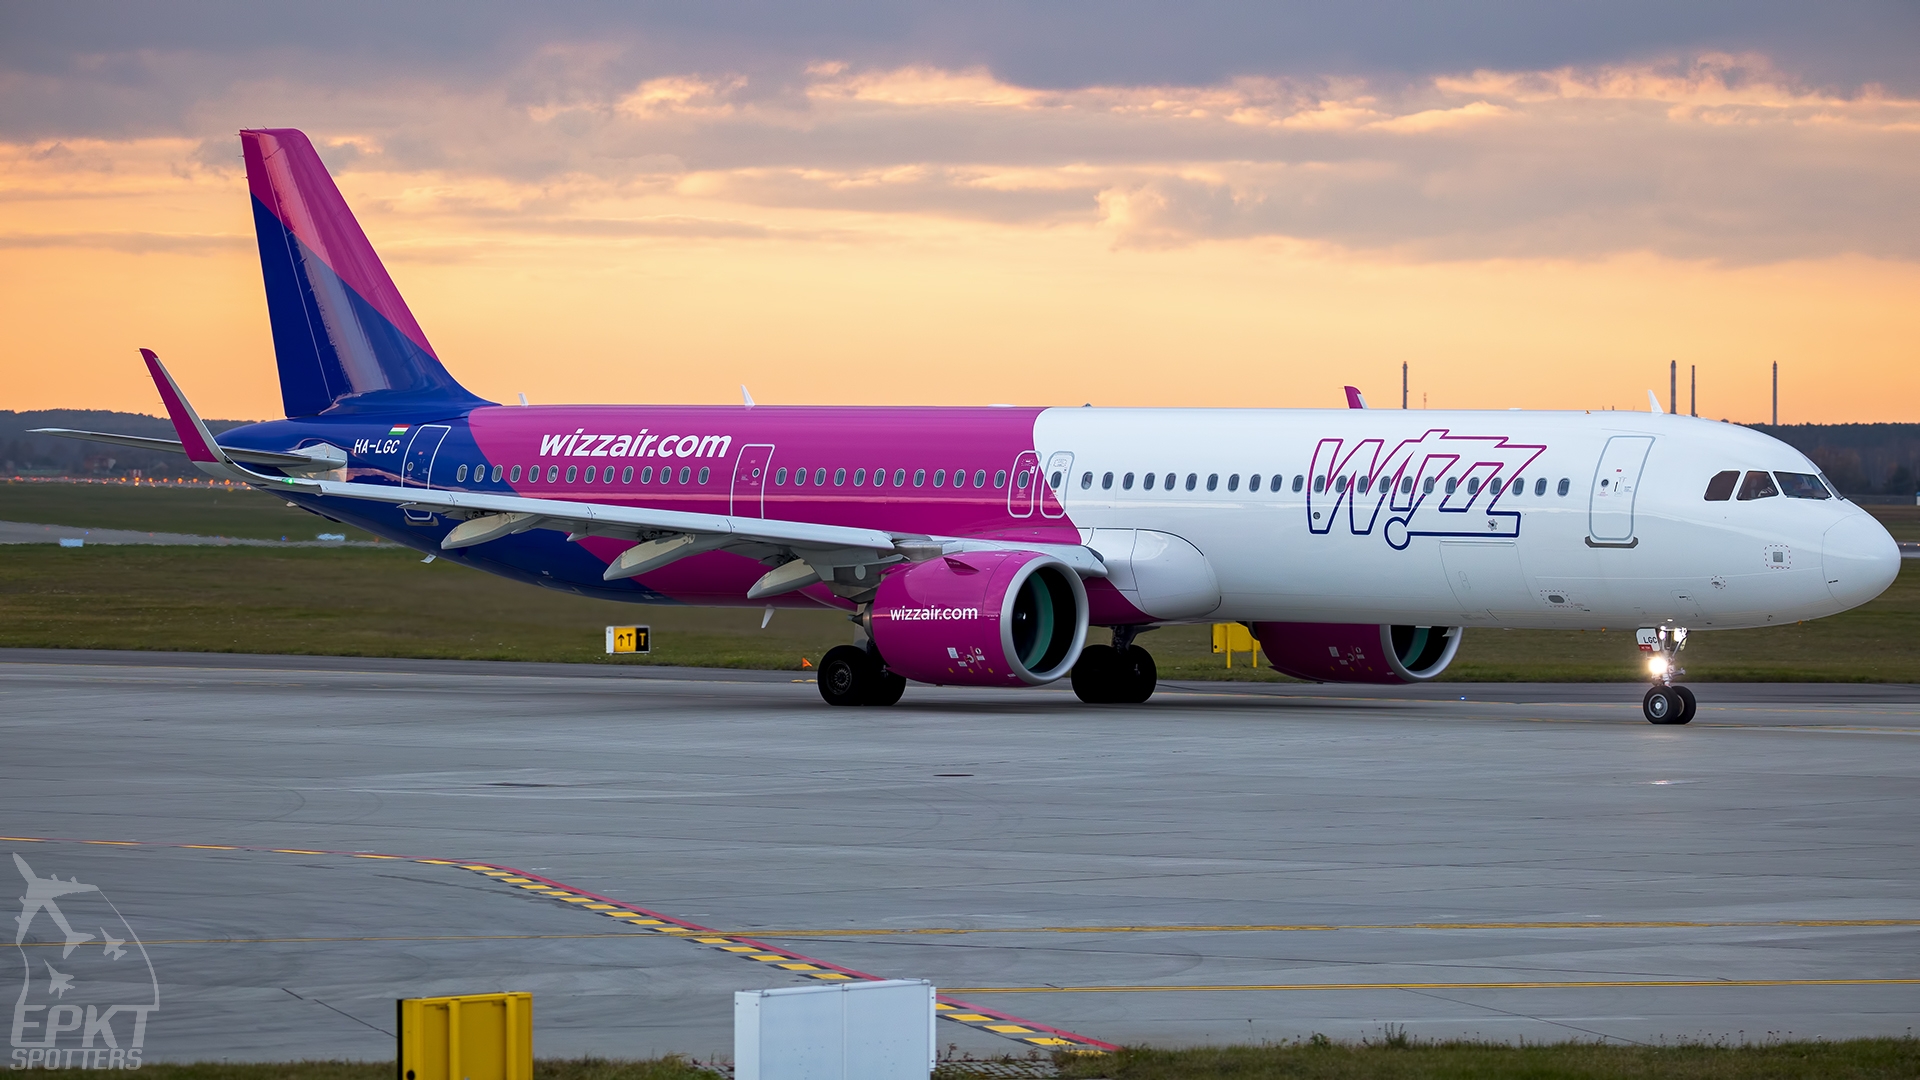 HA-LGC - Airbus A321 -271NX (Wizz Air) / Pyrzowice - Katowice Poland [EPKT/KTW]